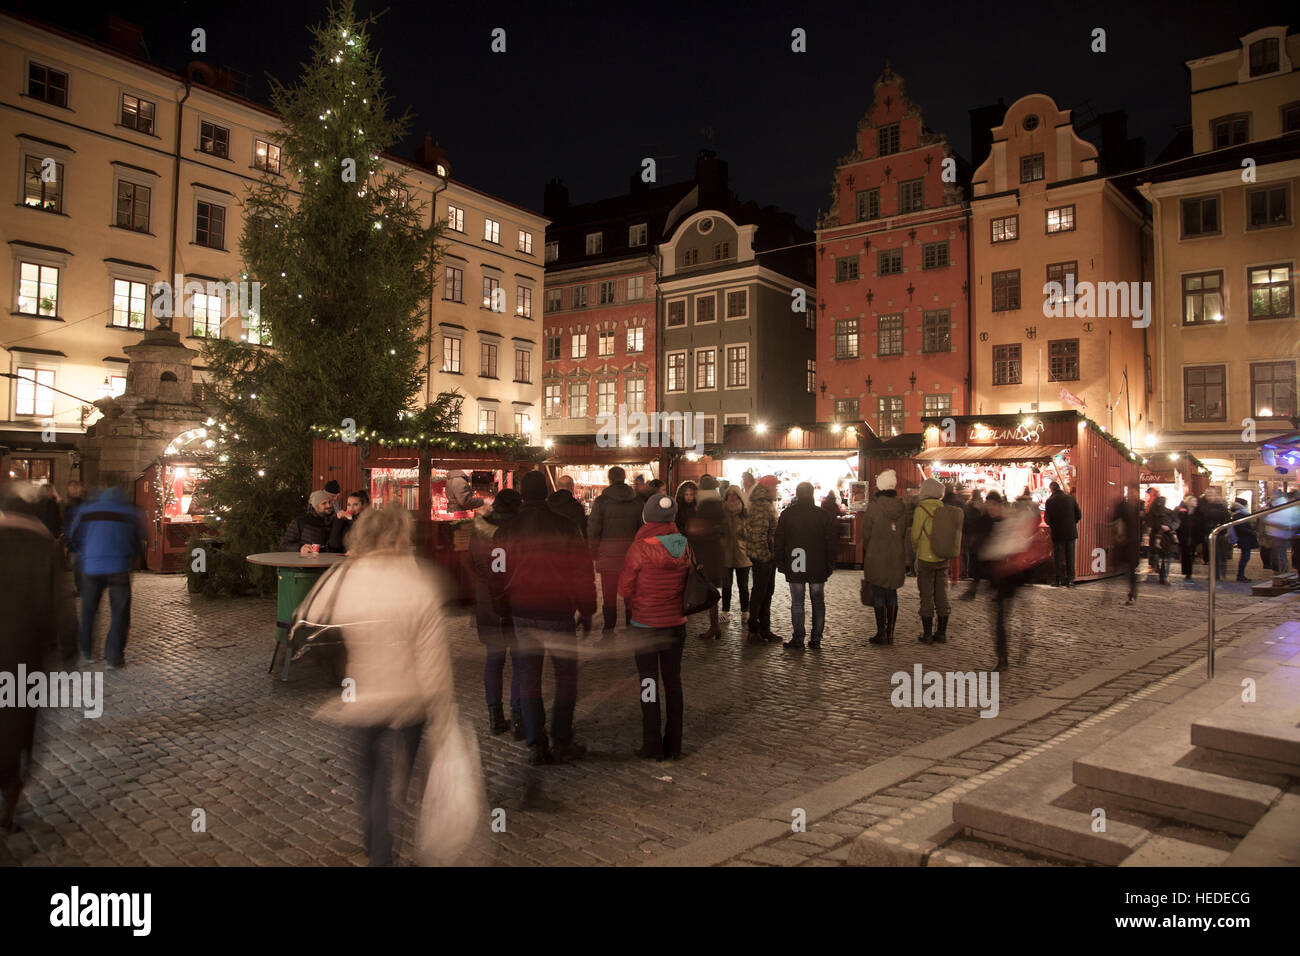 Weihnachtsmarkt In der Altstadt aus dem Mittelalter macht es des ältesten Marktes, Stockfoto